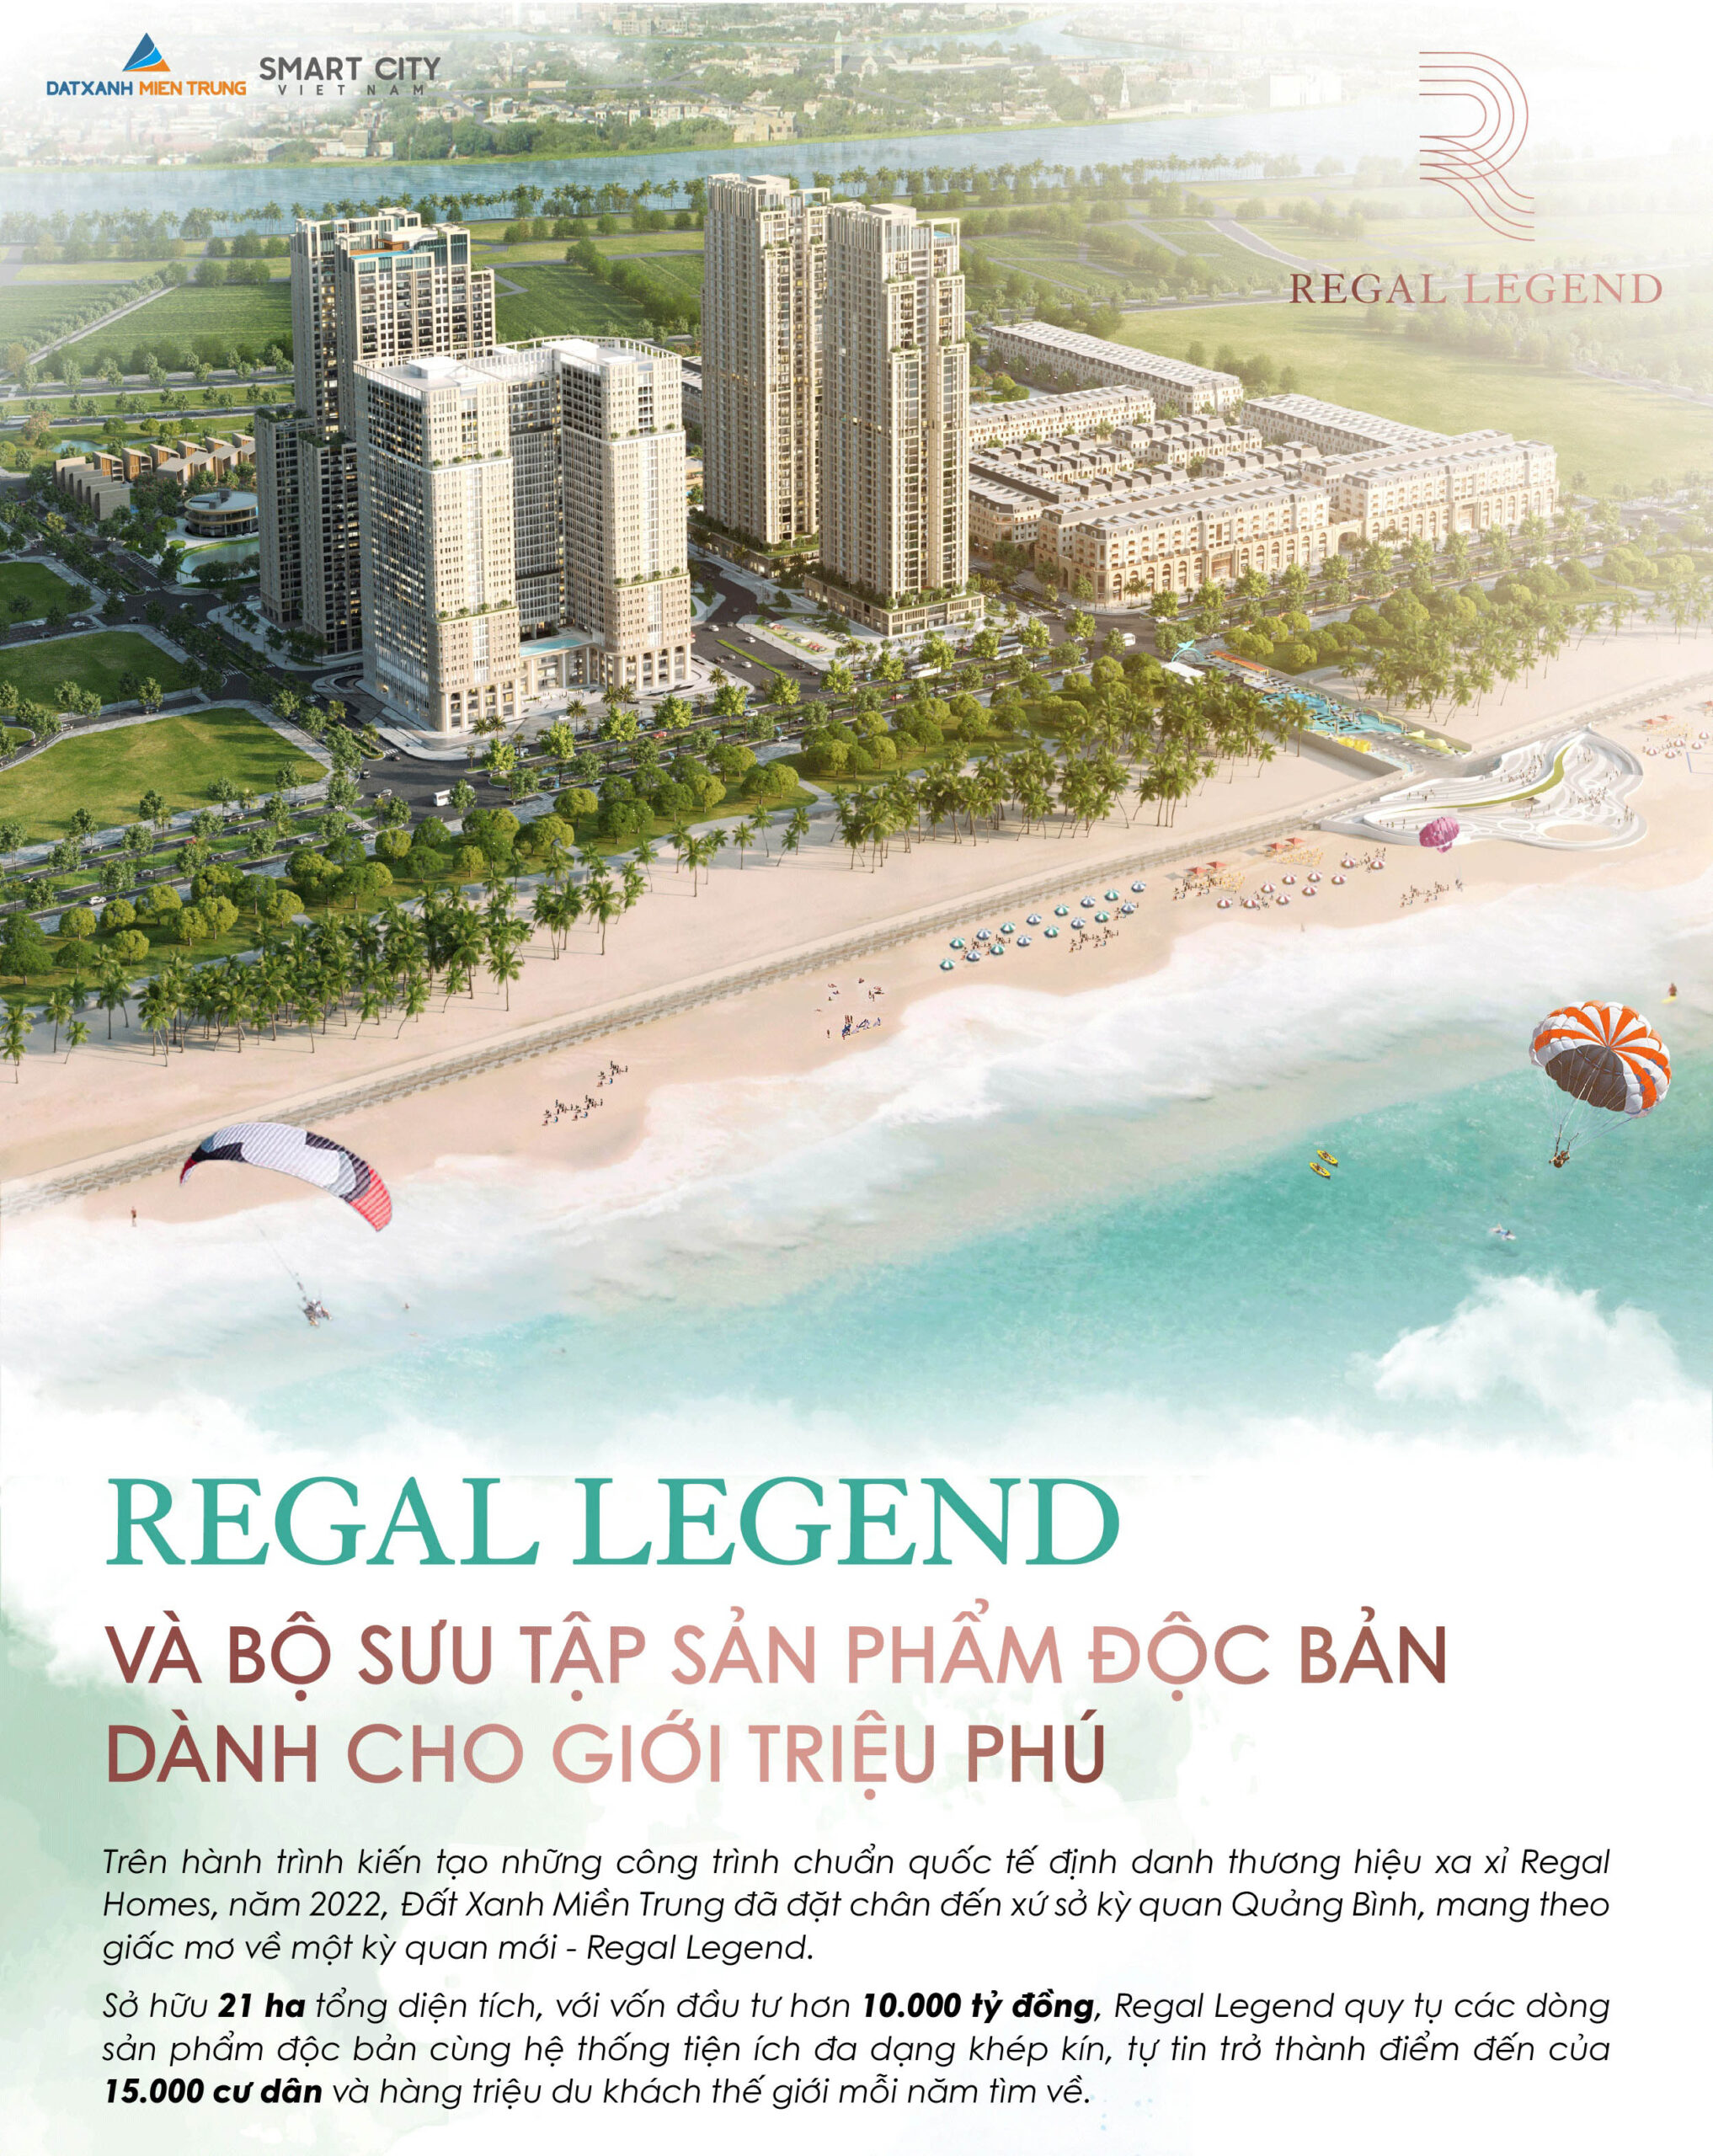 Regal Legend: Sắc vóc một đại đô thị du lịch quốc tế với các dòng siêu phẩm độc bản - Viet Nam Smart City